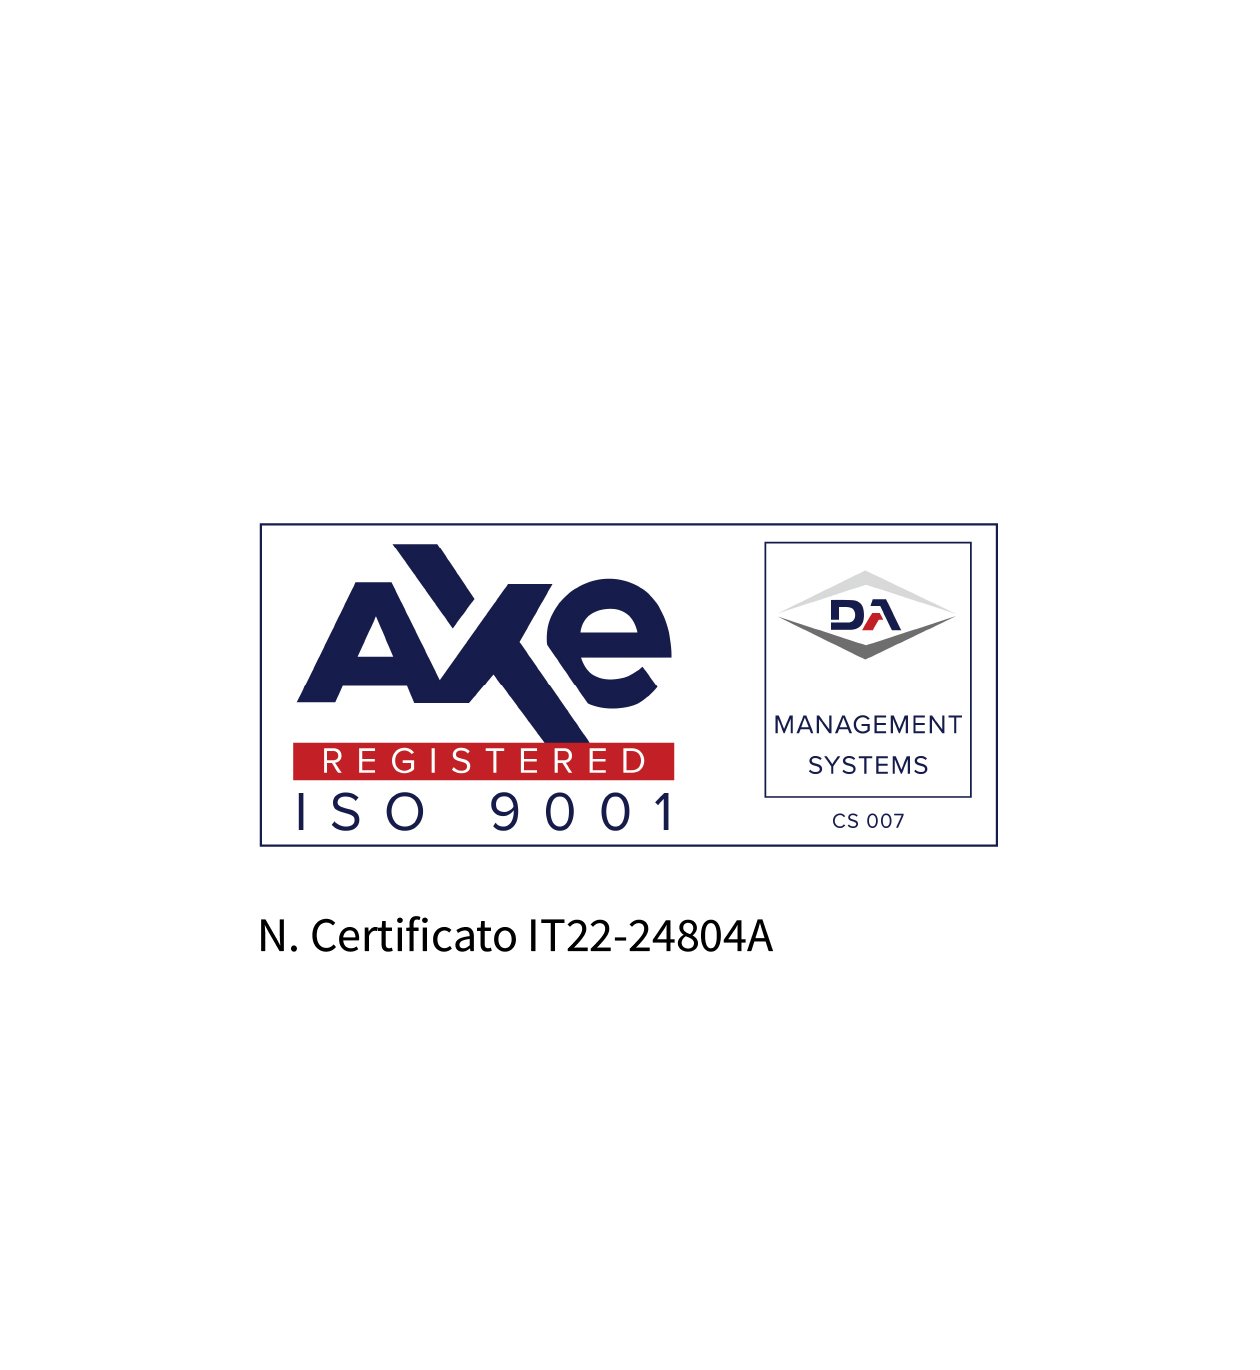 CERTIFICAZIONE ISO 9001:2015